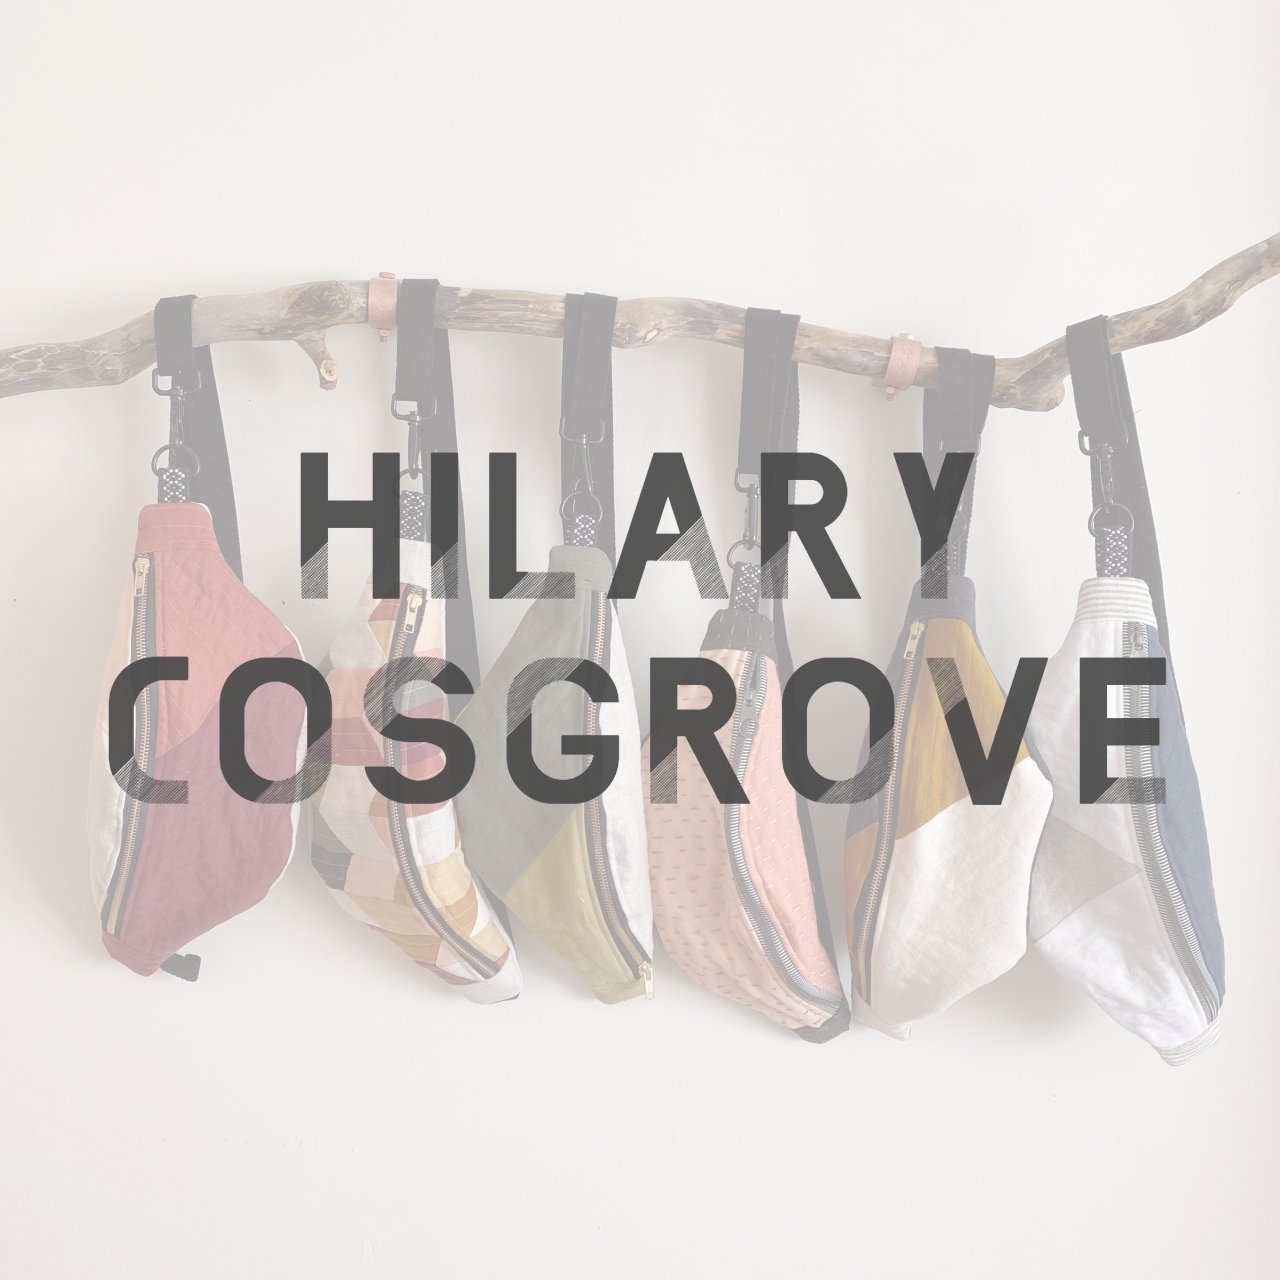 Hilary Cosgrove(1).jpg